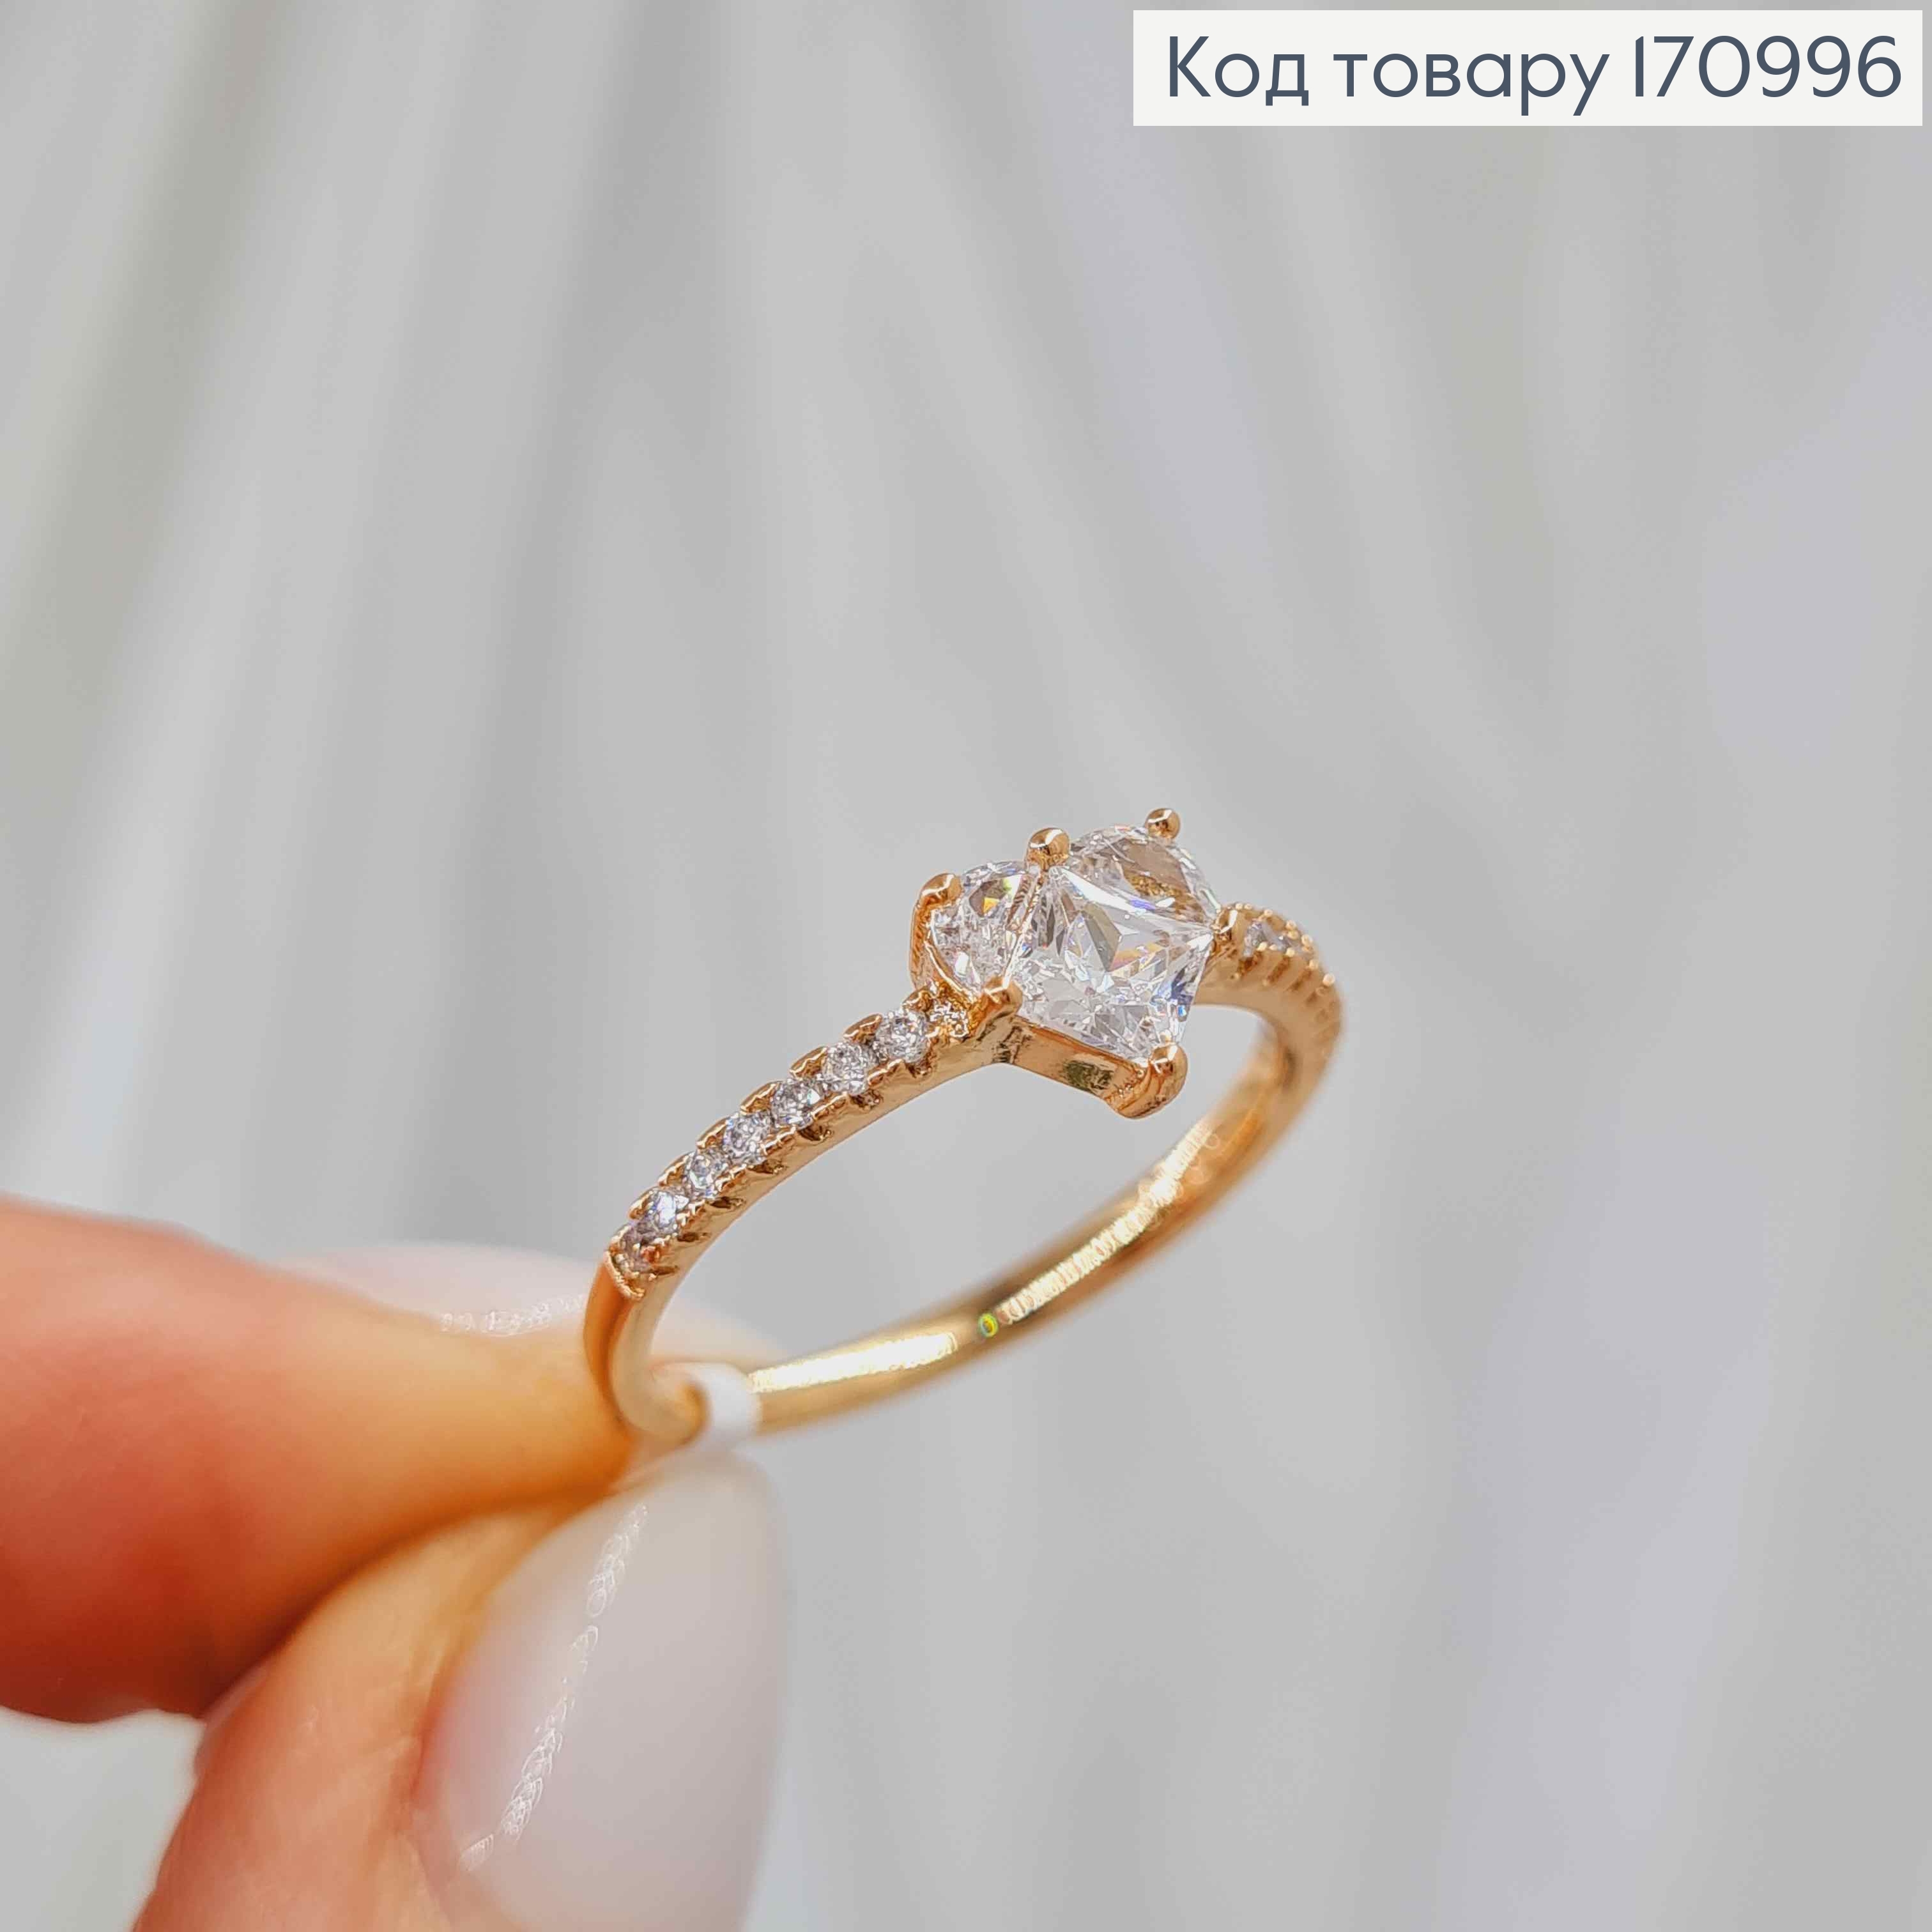 Перстень "Серце бажання" оздоблене камінцями, Xuping 18К 170996 фото 3